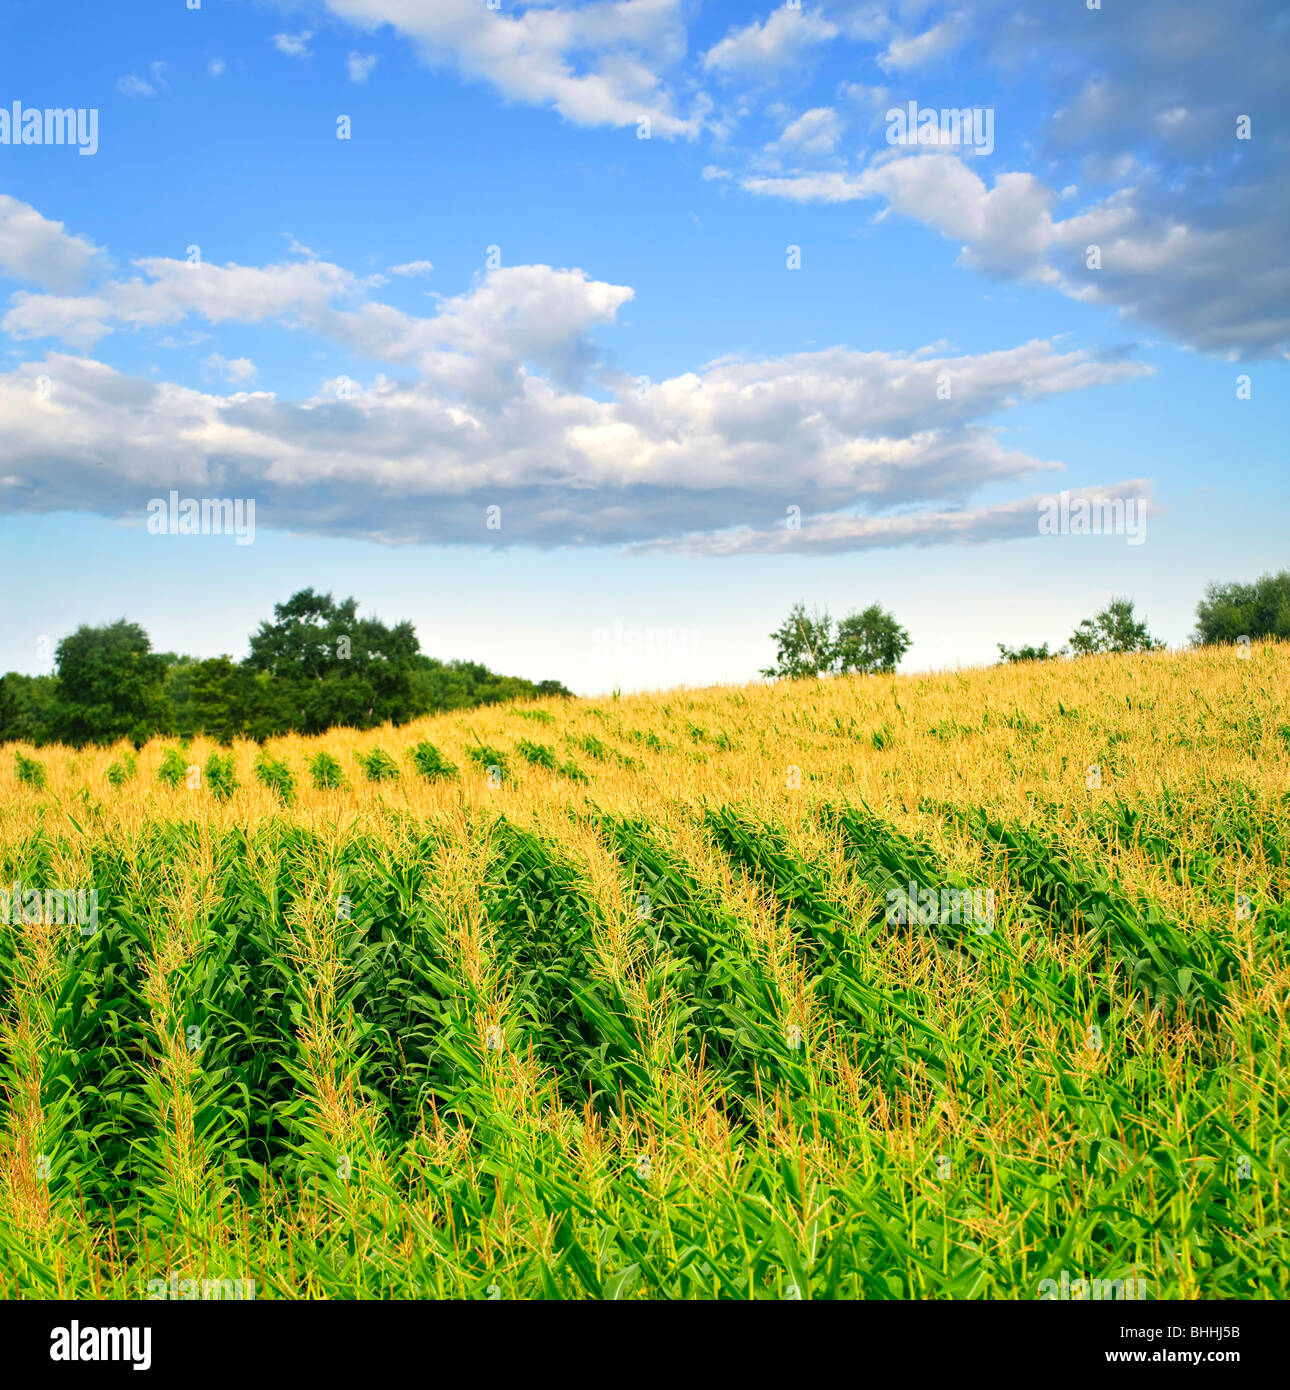 El paisaje agrícola de campo de maíz en pequeña escala agrícola sostenible Foto de stock